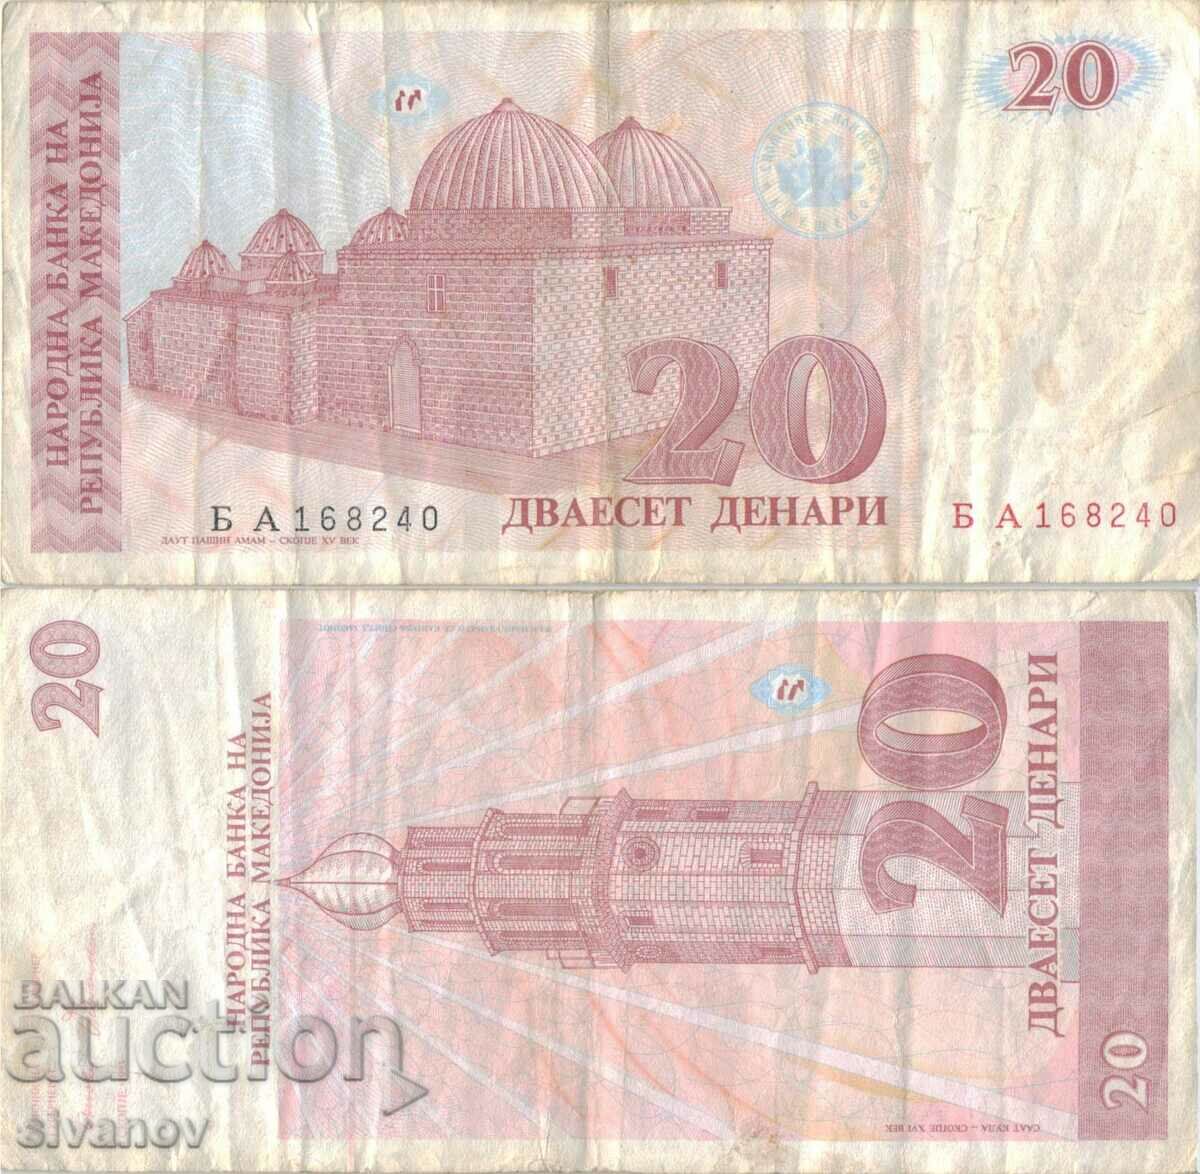 Macedonia 20 denars 1993 banknote #5215